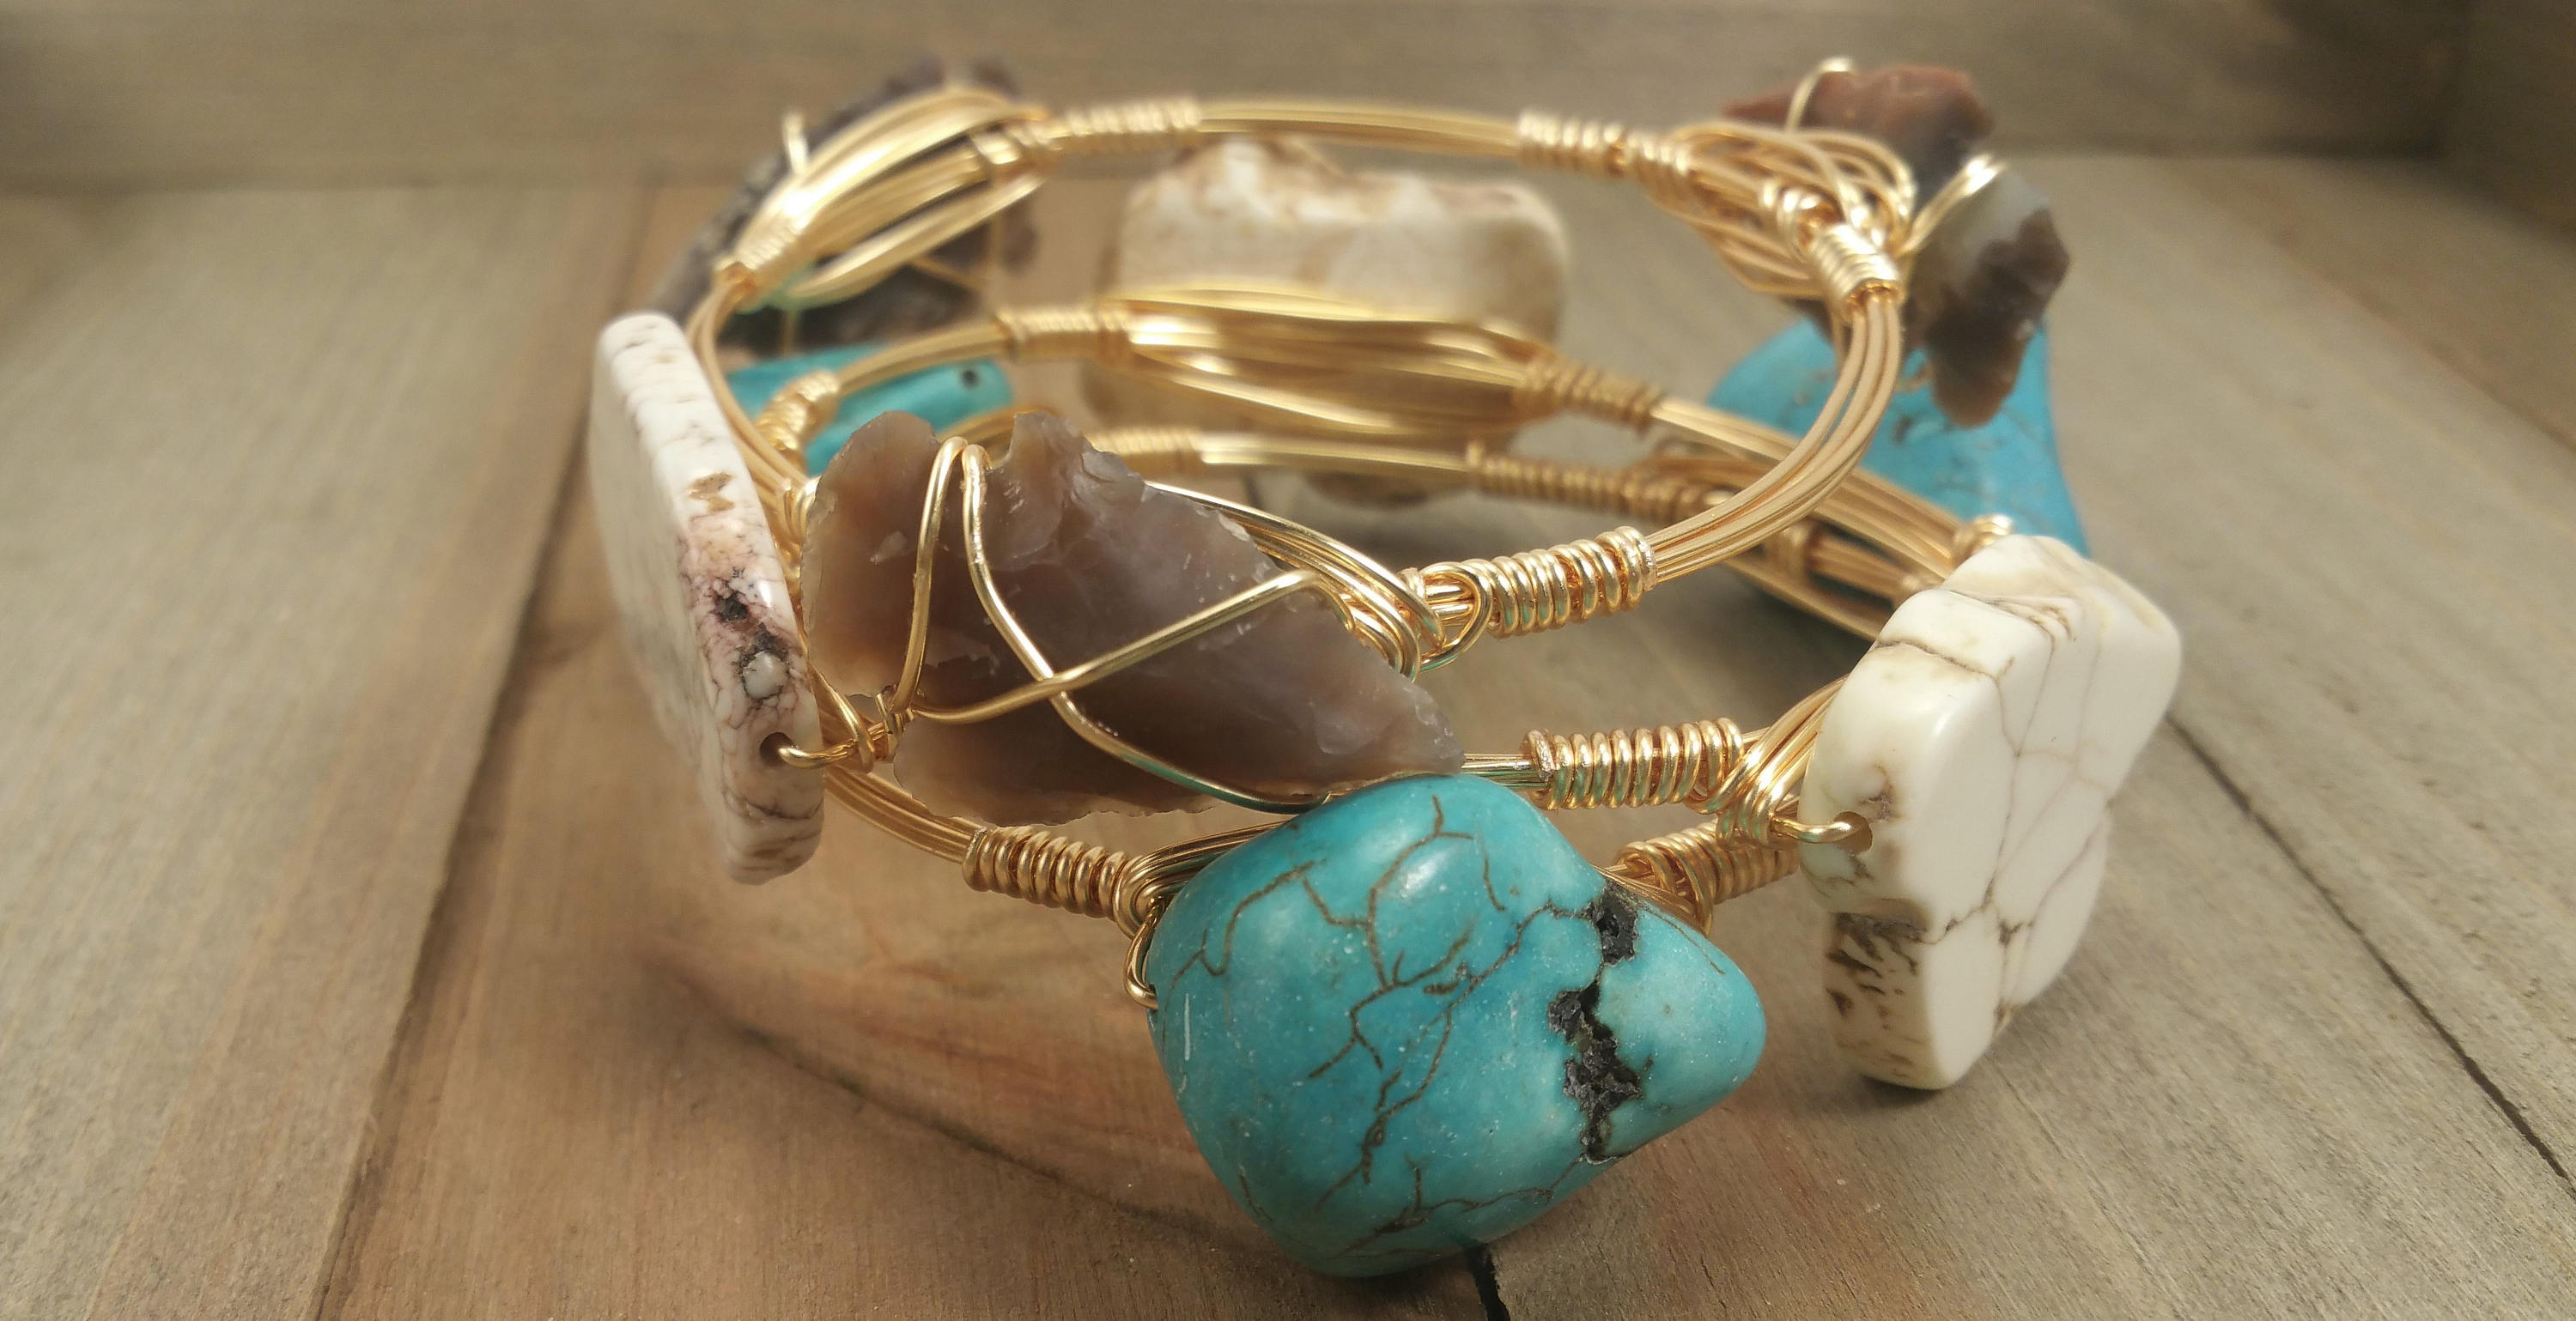 Turquoise nugget bangle bracelet